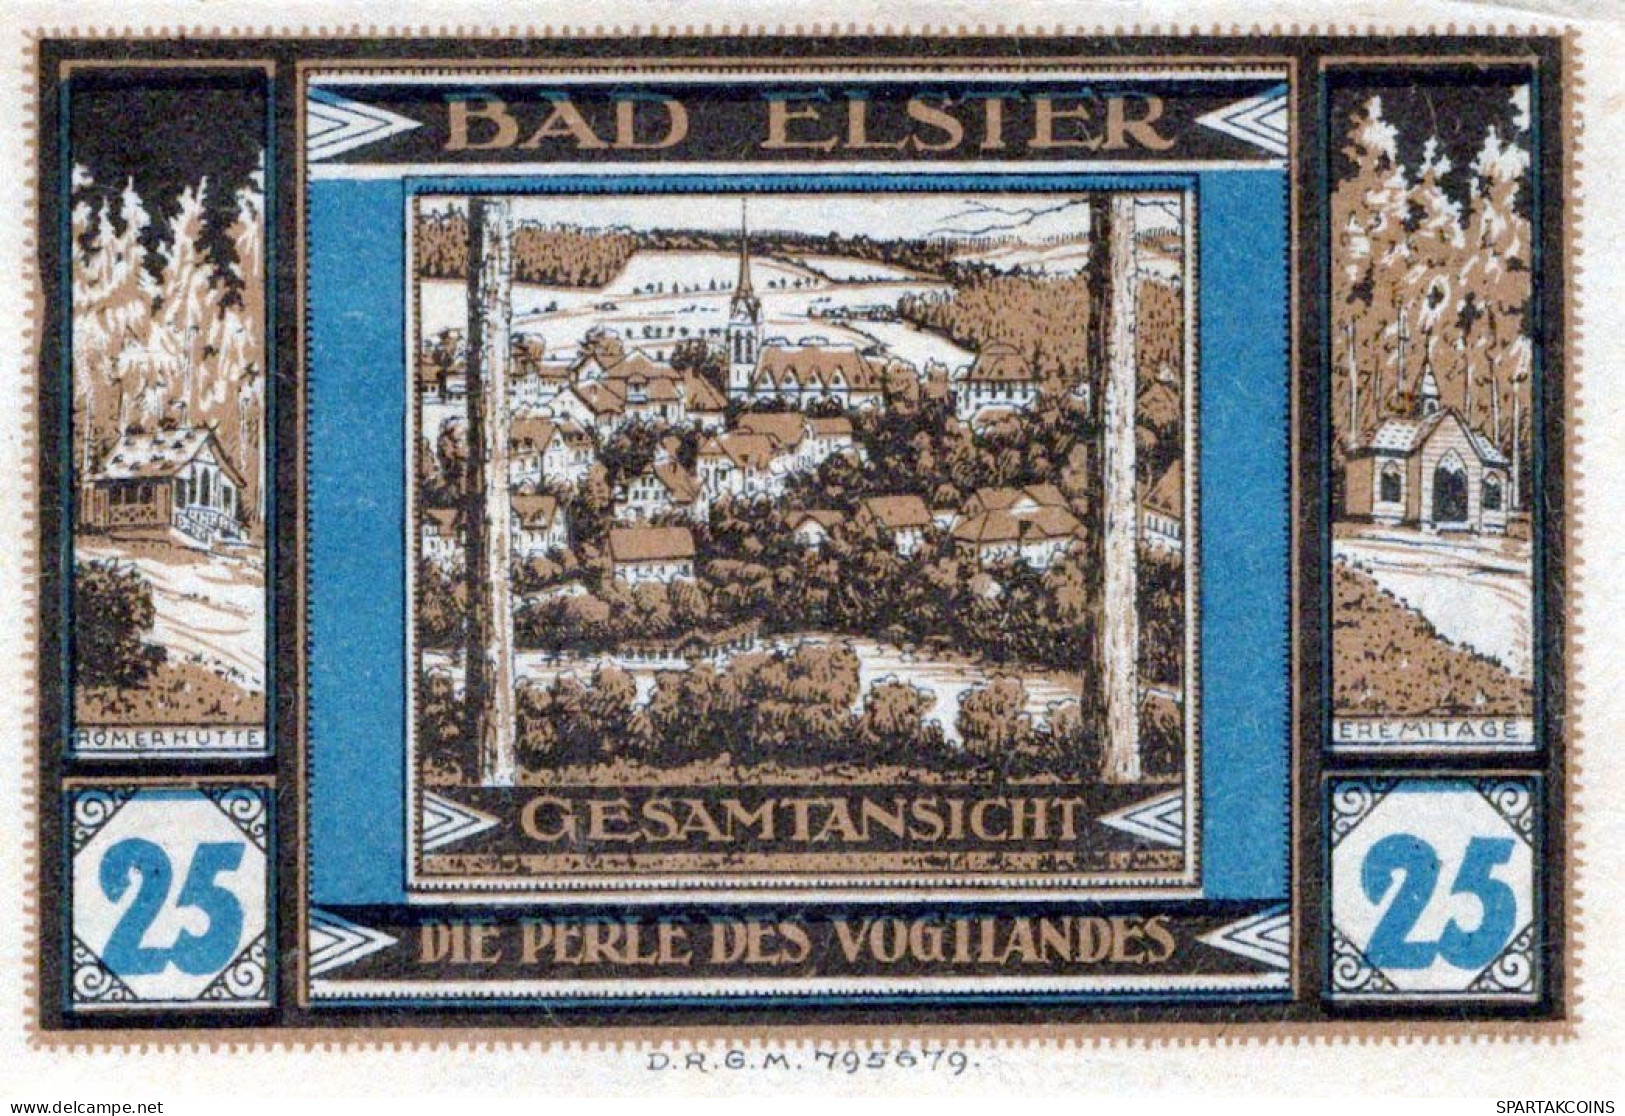 25 PFENNIG 1922 Stadt BAD ELSTER Saxony UNC DEUTSCHLAND Notgeld Banknote #PC939 - [11] Local Banknote Issues